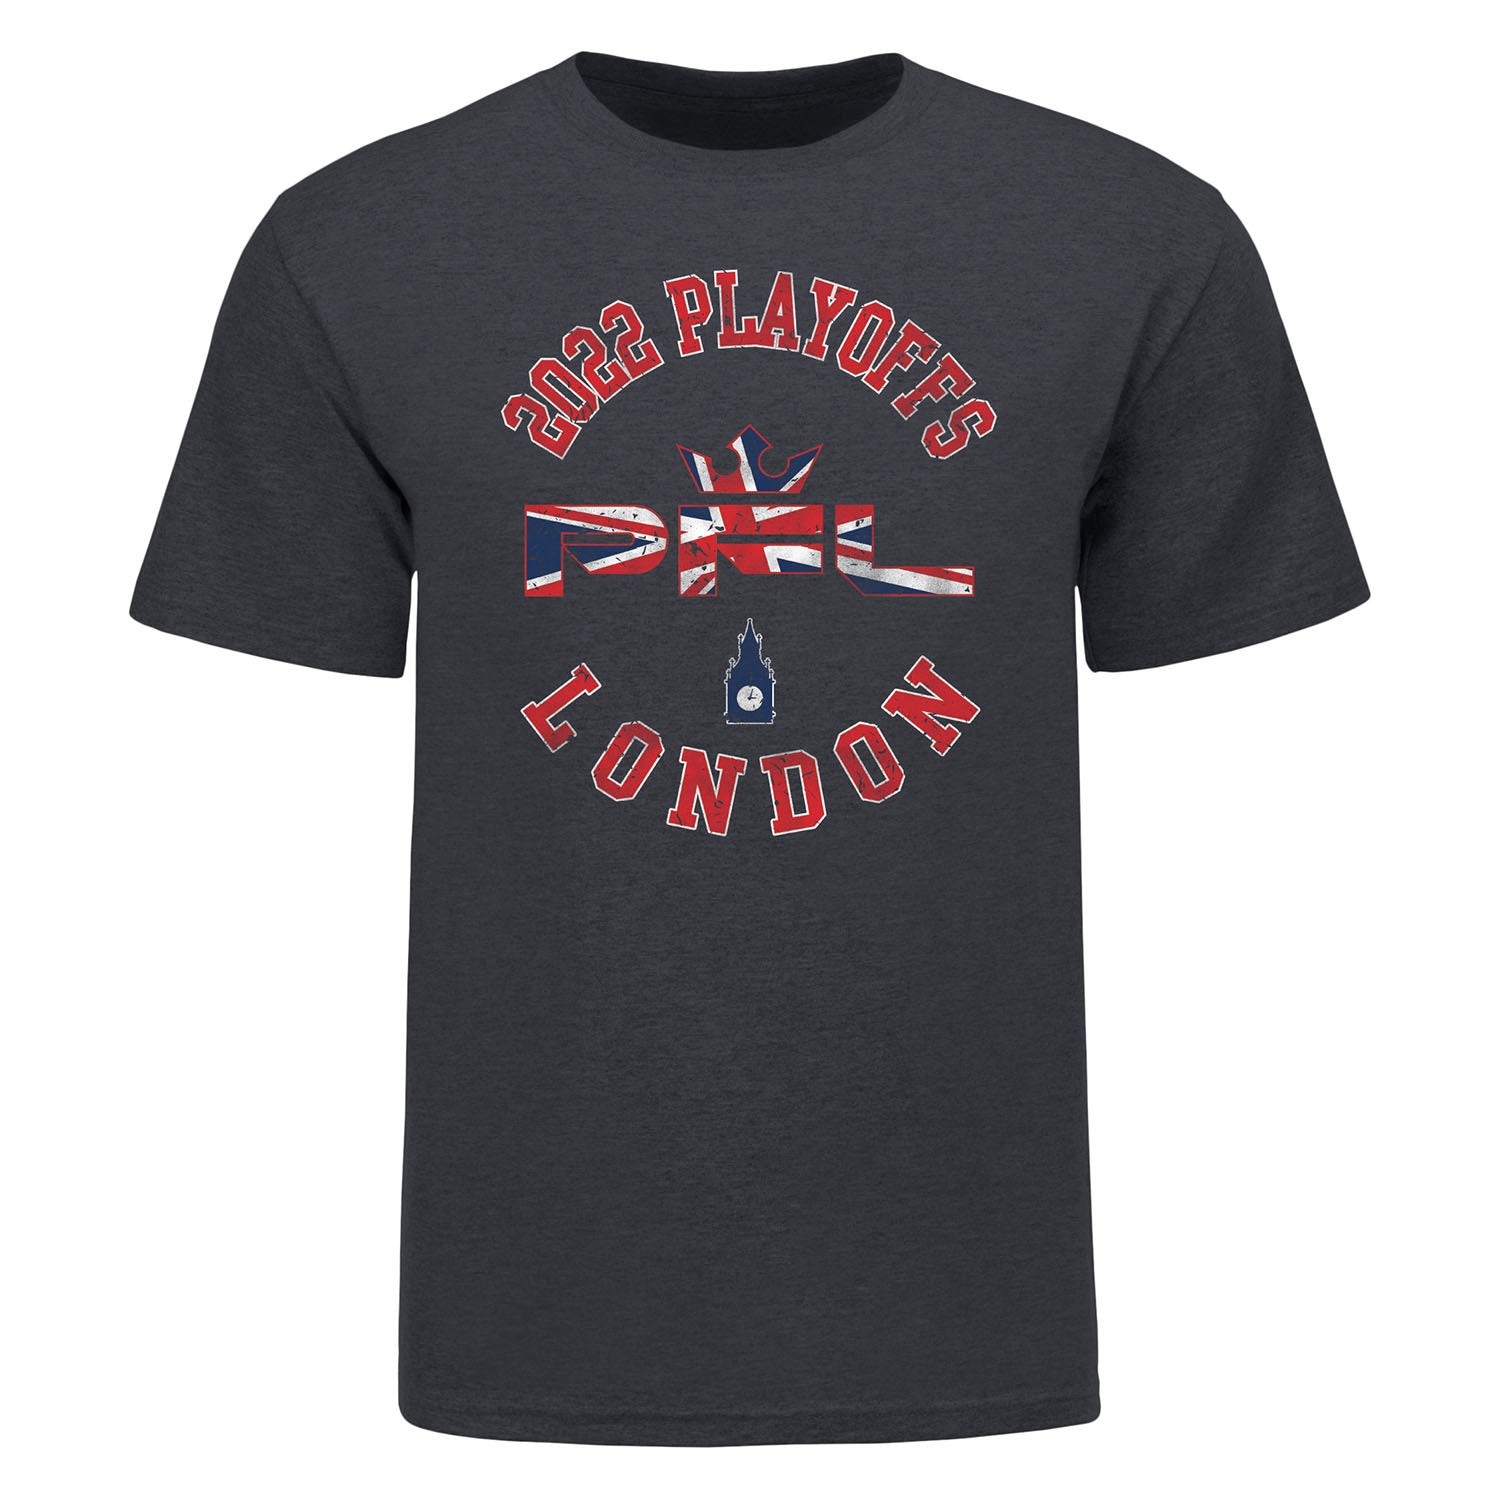 PFL Playoffs T-Shirt - London in Dark Grey Heather - Front View